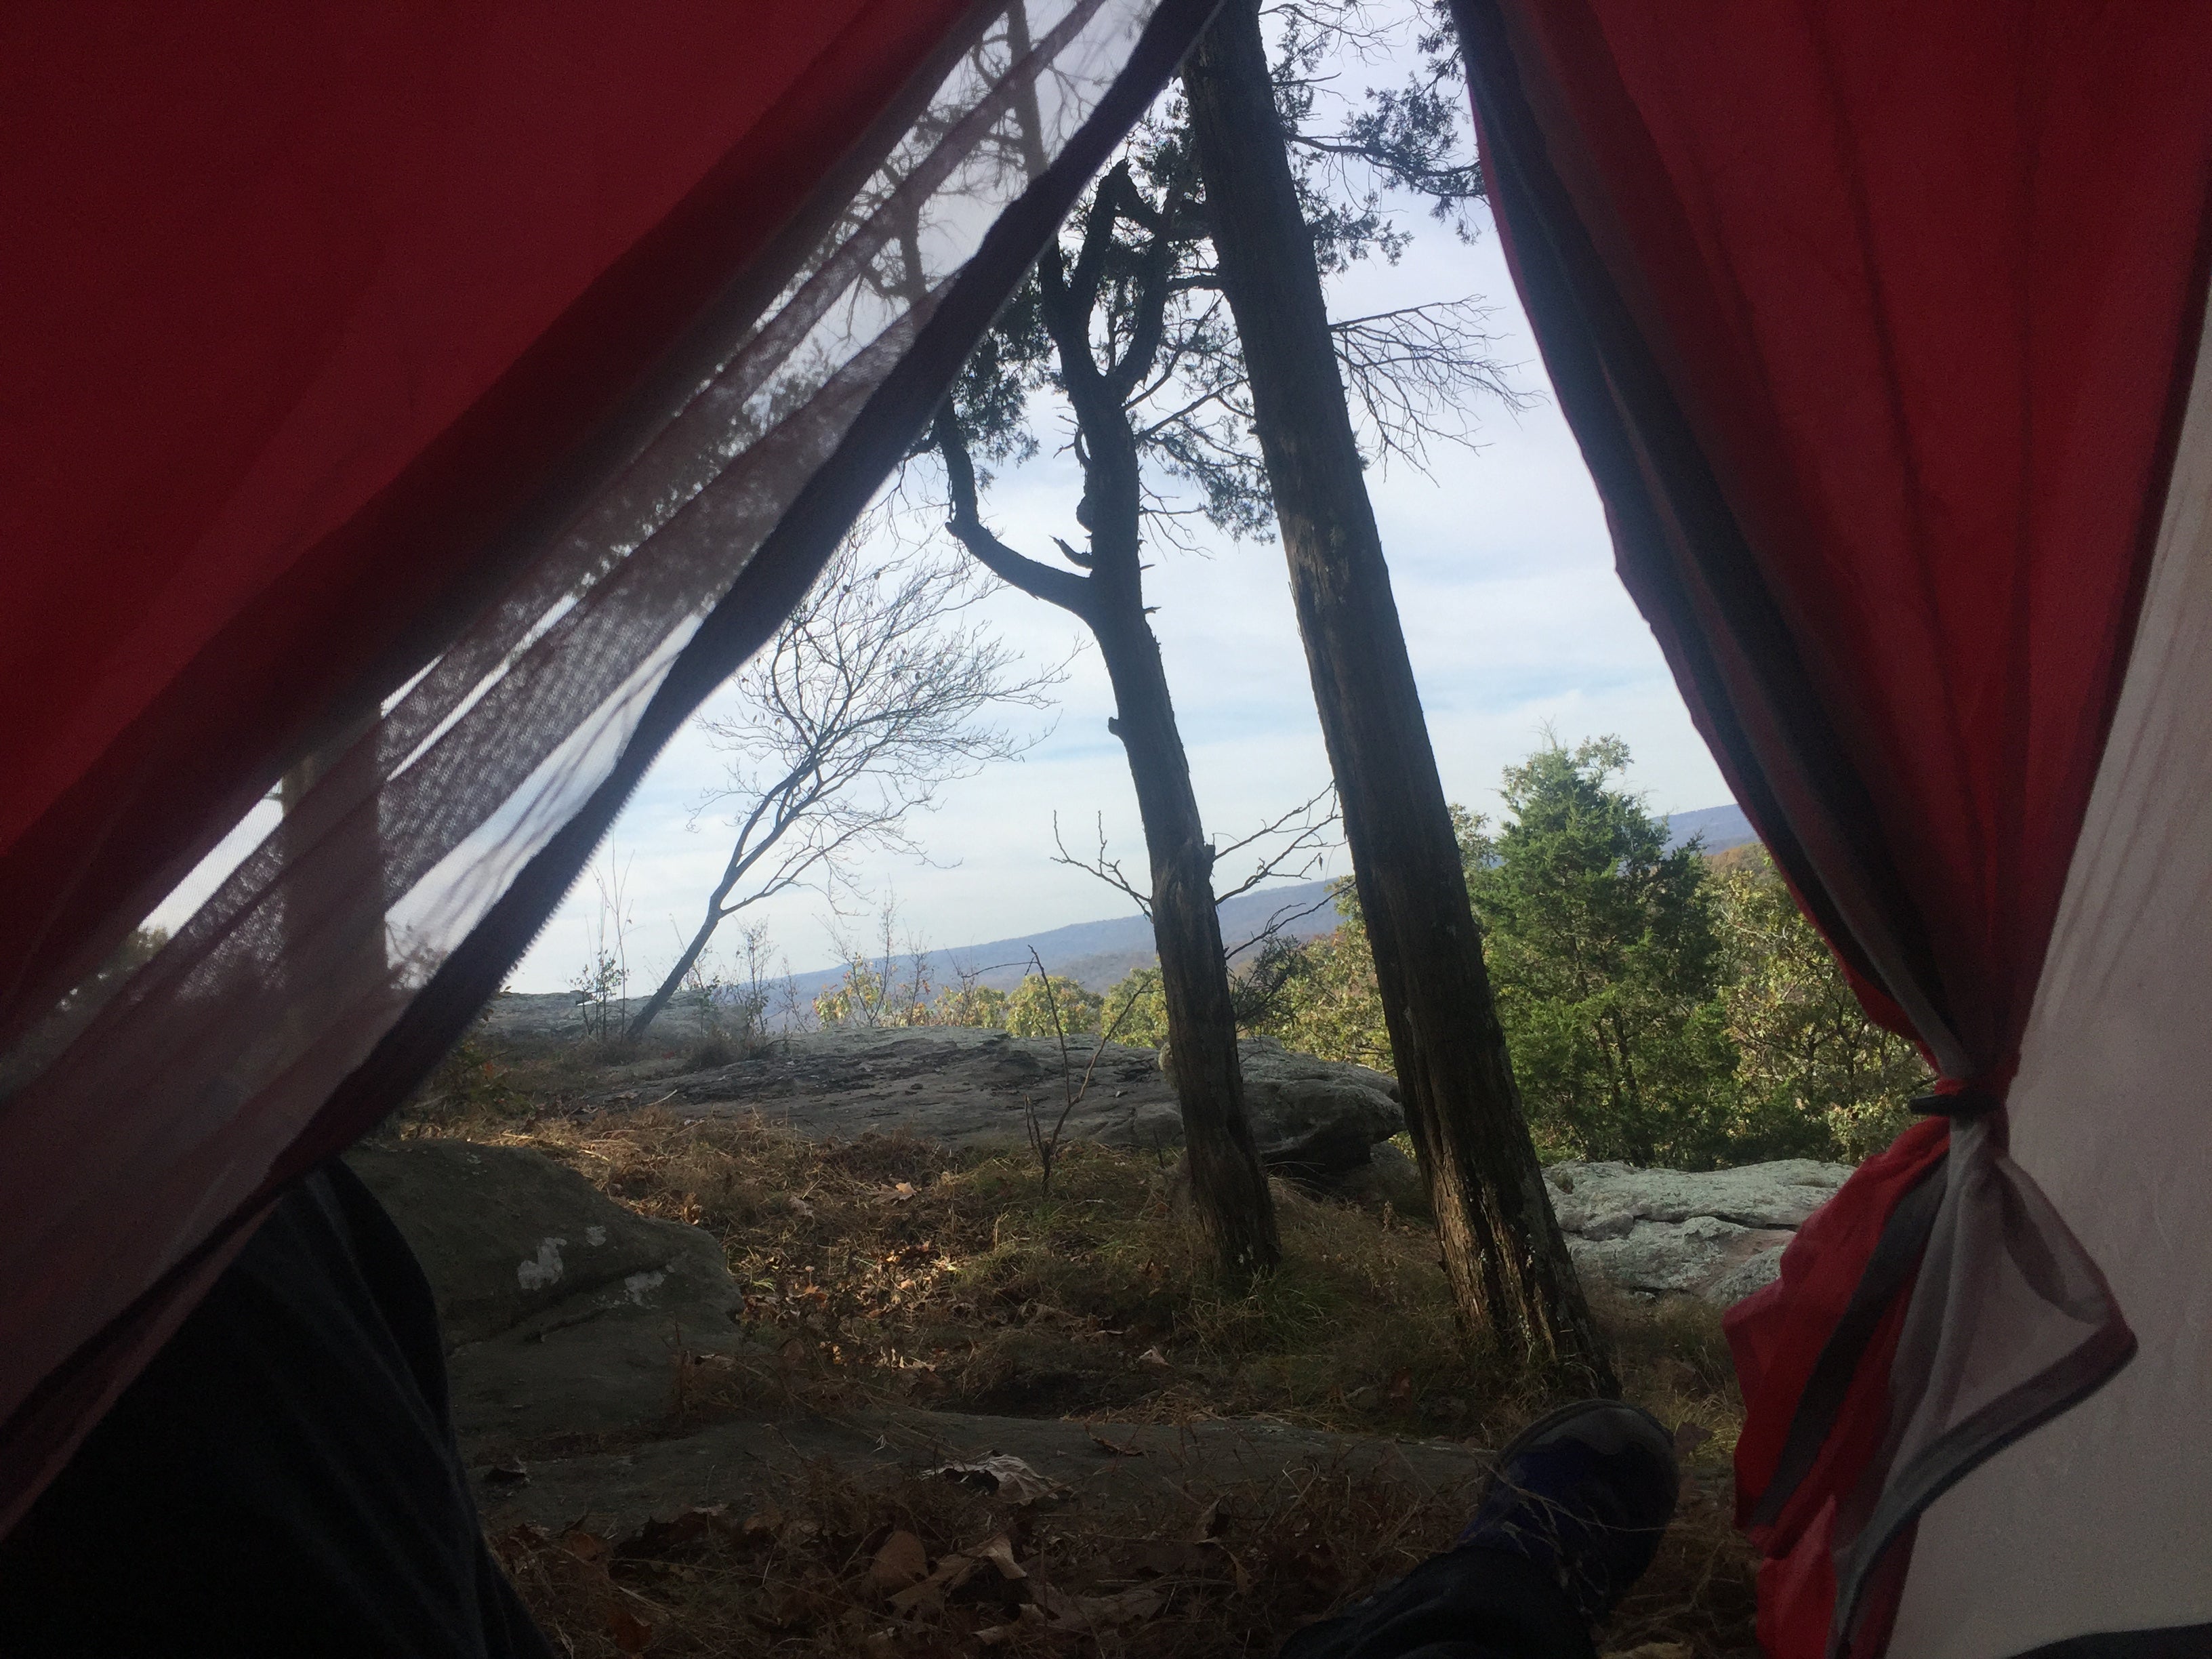 Camping in McNulta